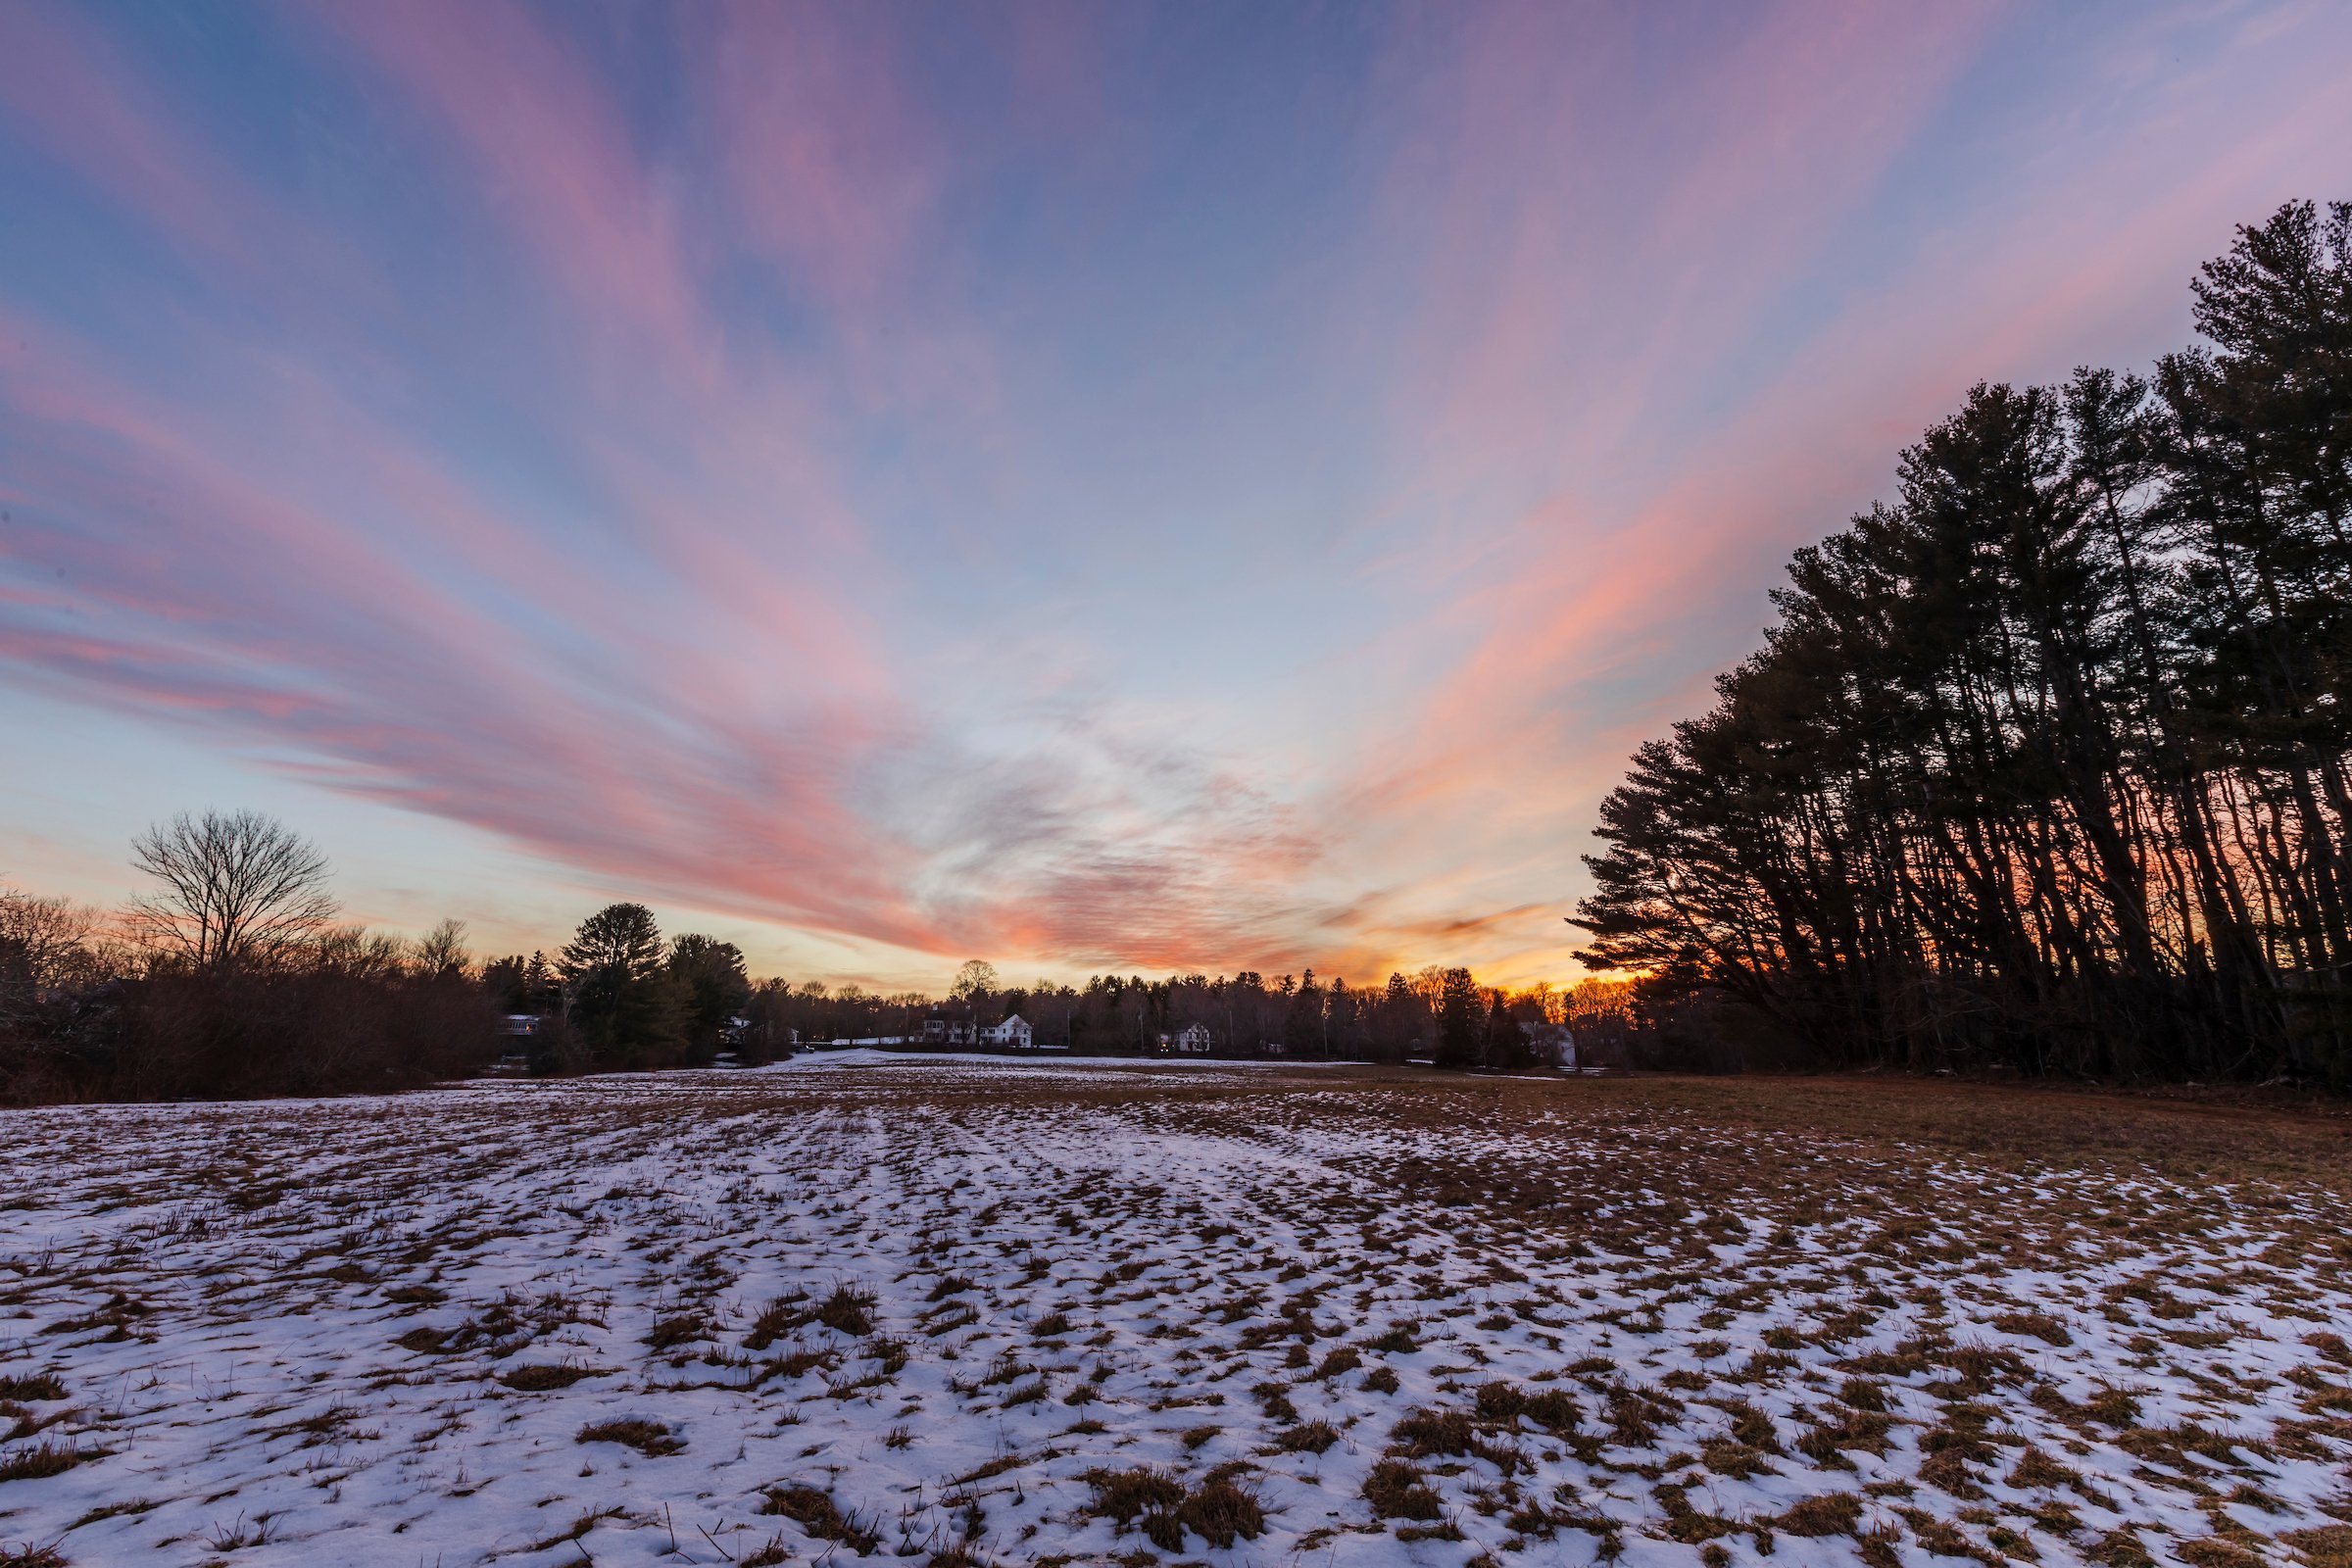  Sunset at Sylvester Field in Hanover, Massachusetts. 